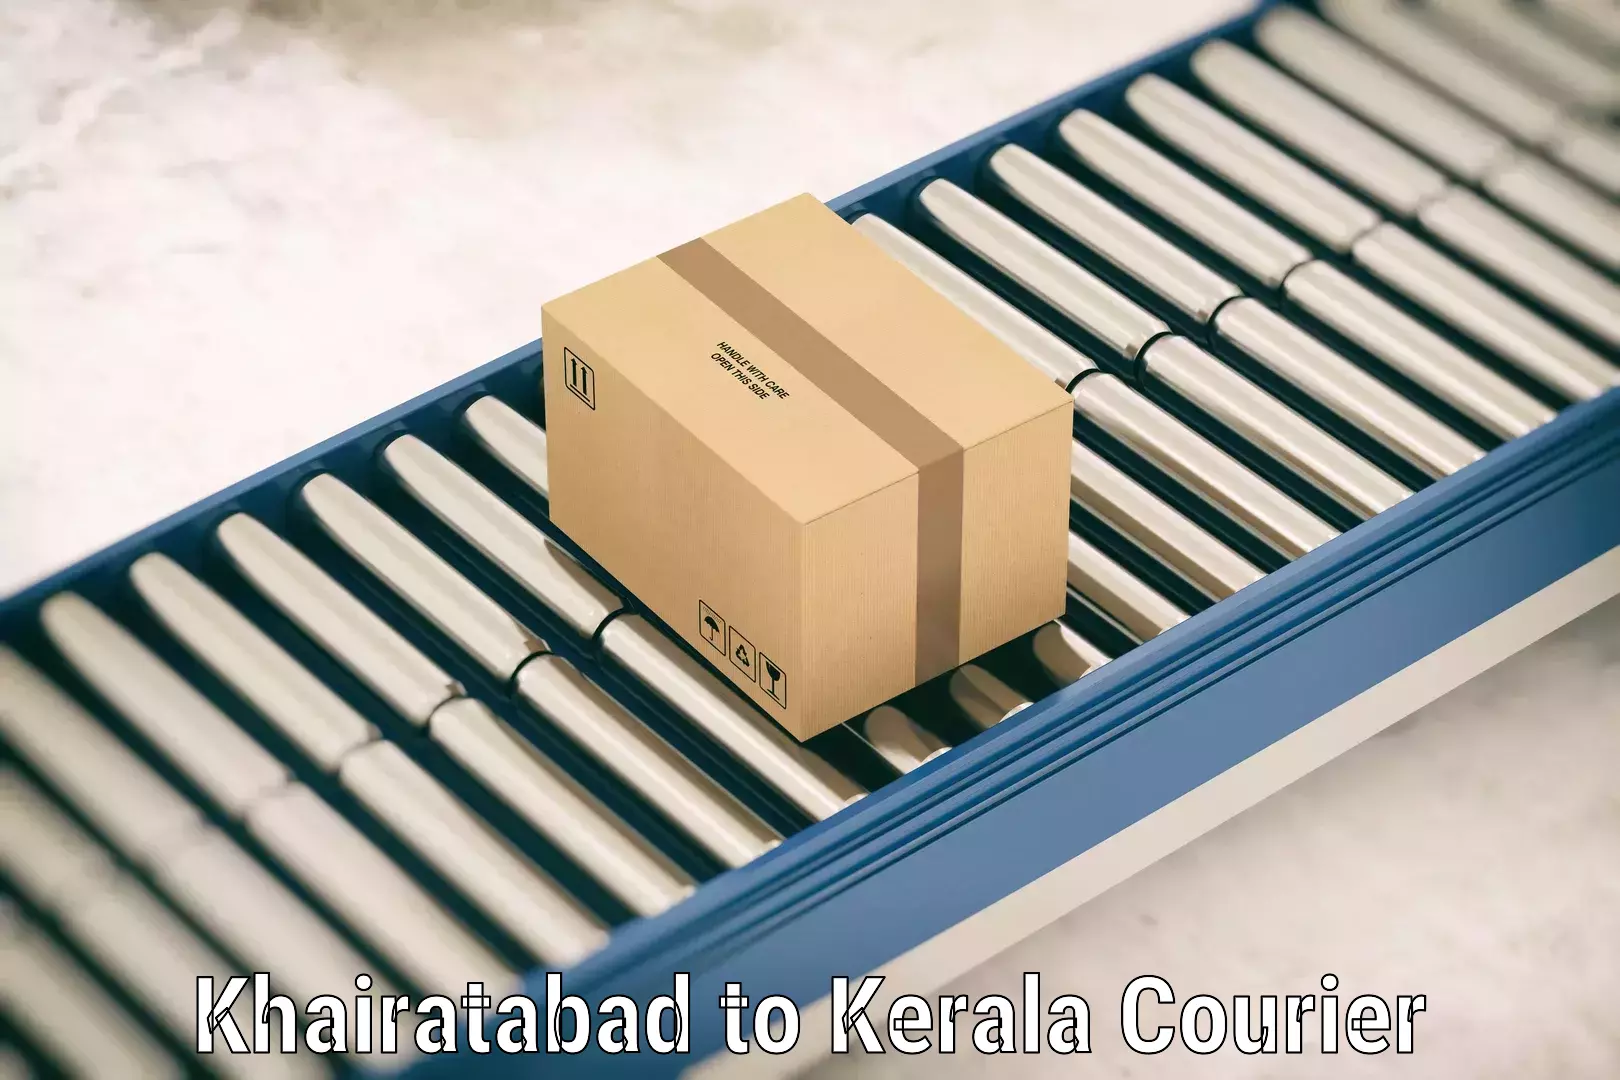 Luggage shipment specialists Khairatabad to Narikkuni